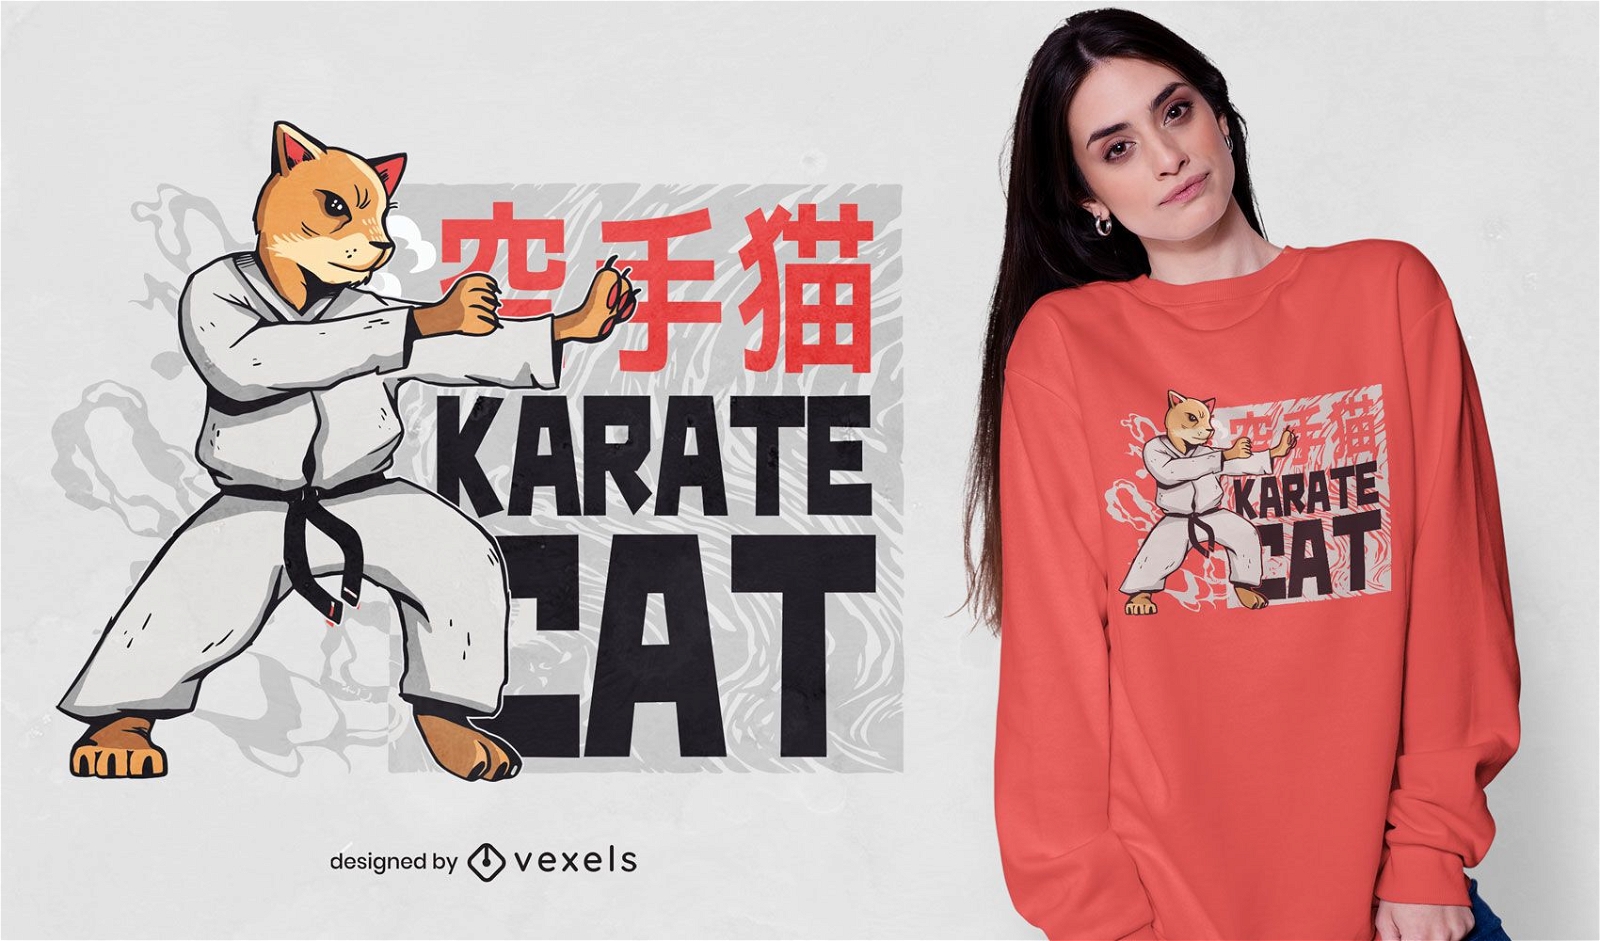 Karate-Katzen-T-Shirt Design